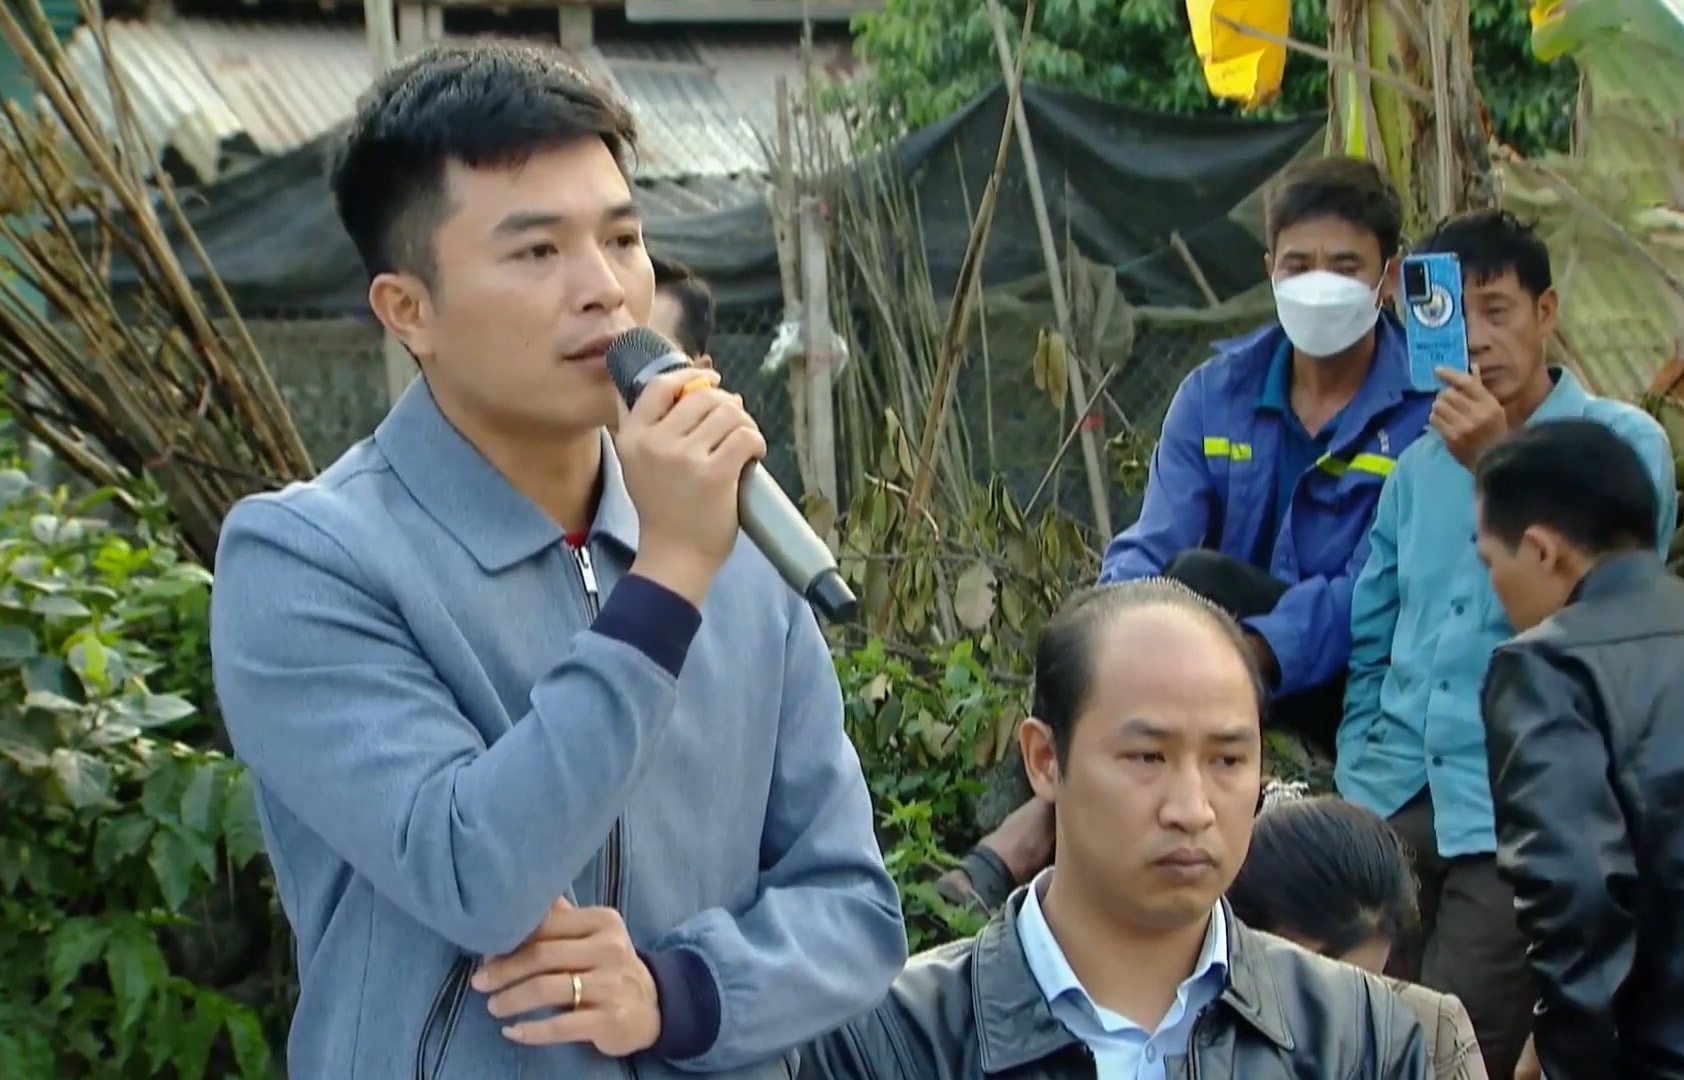 Ông Ngô Xuân Trường, Giám đốc Công ty TNHH chăn nuôi Sơn Động trao đổi với người dân trước phản ánh công ty gây ô nhiễm. Ảnh: Vân Trường